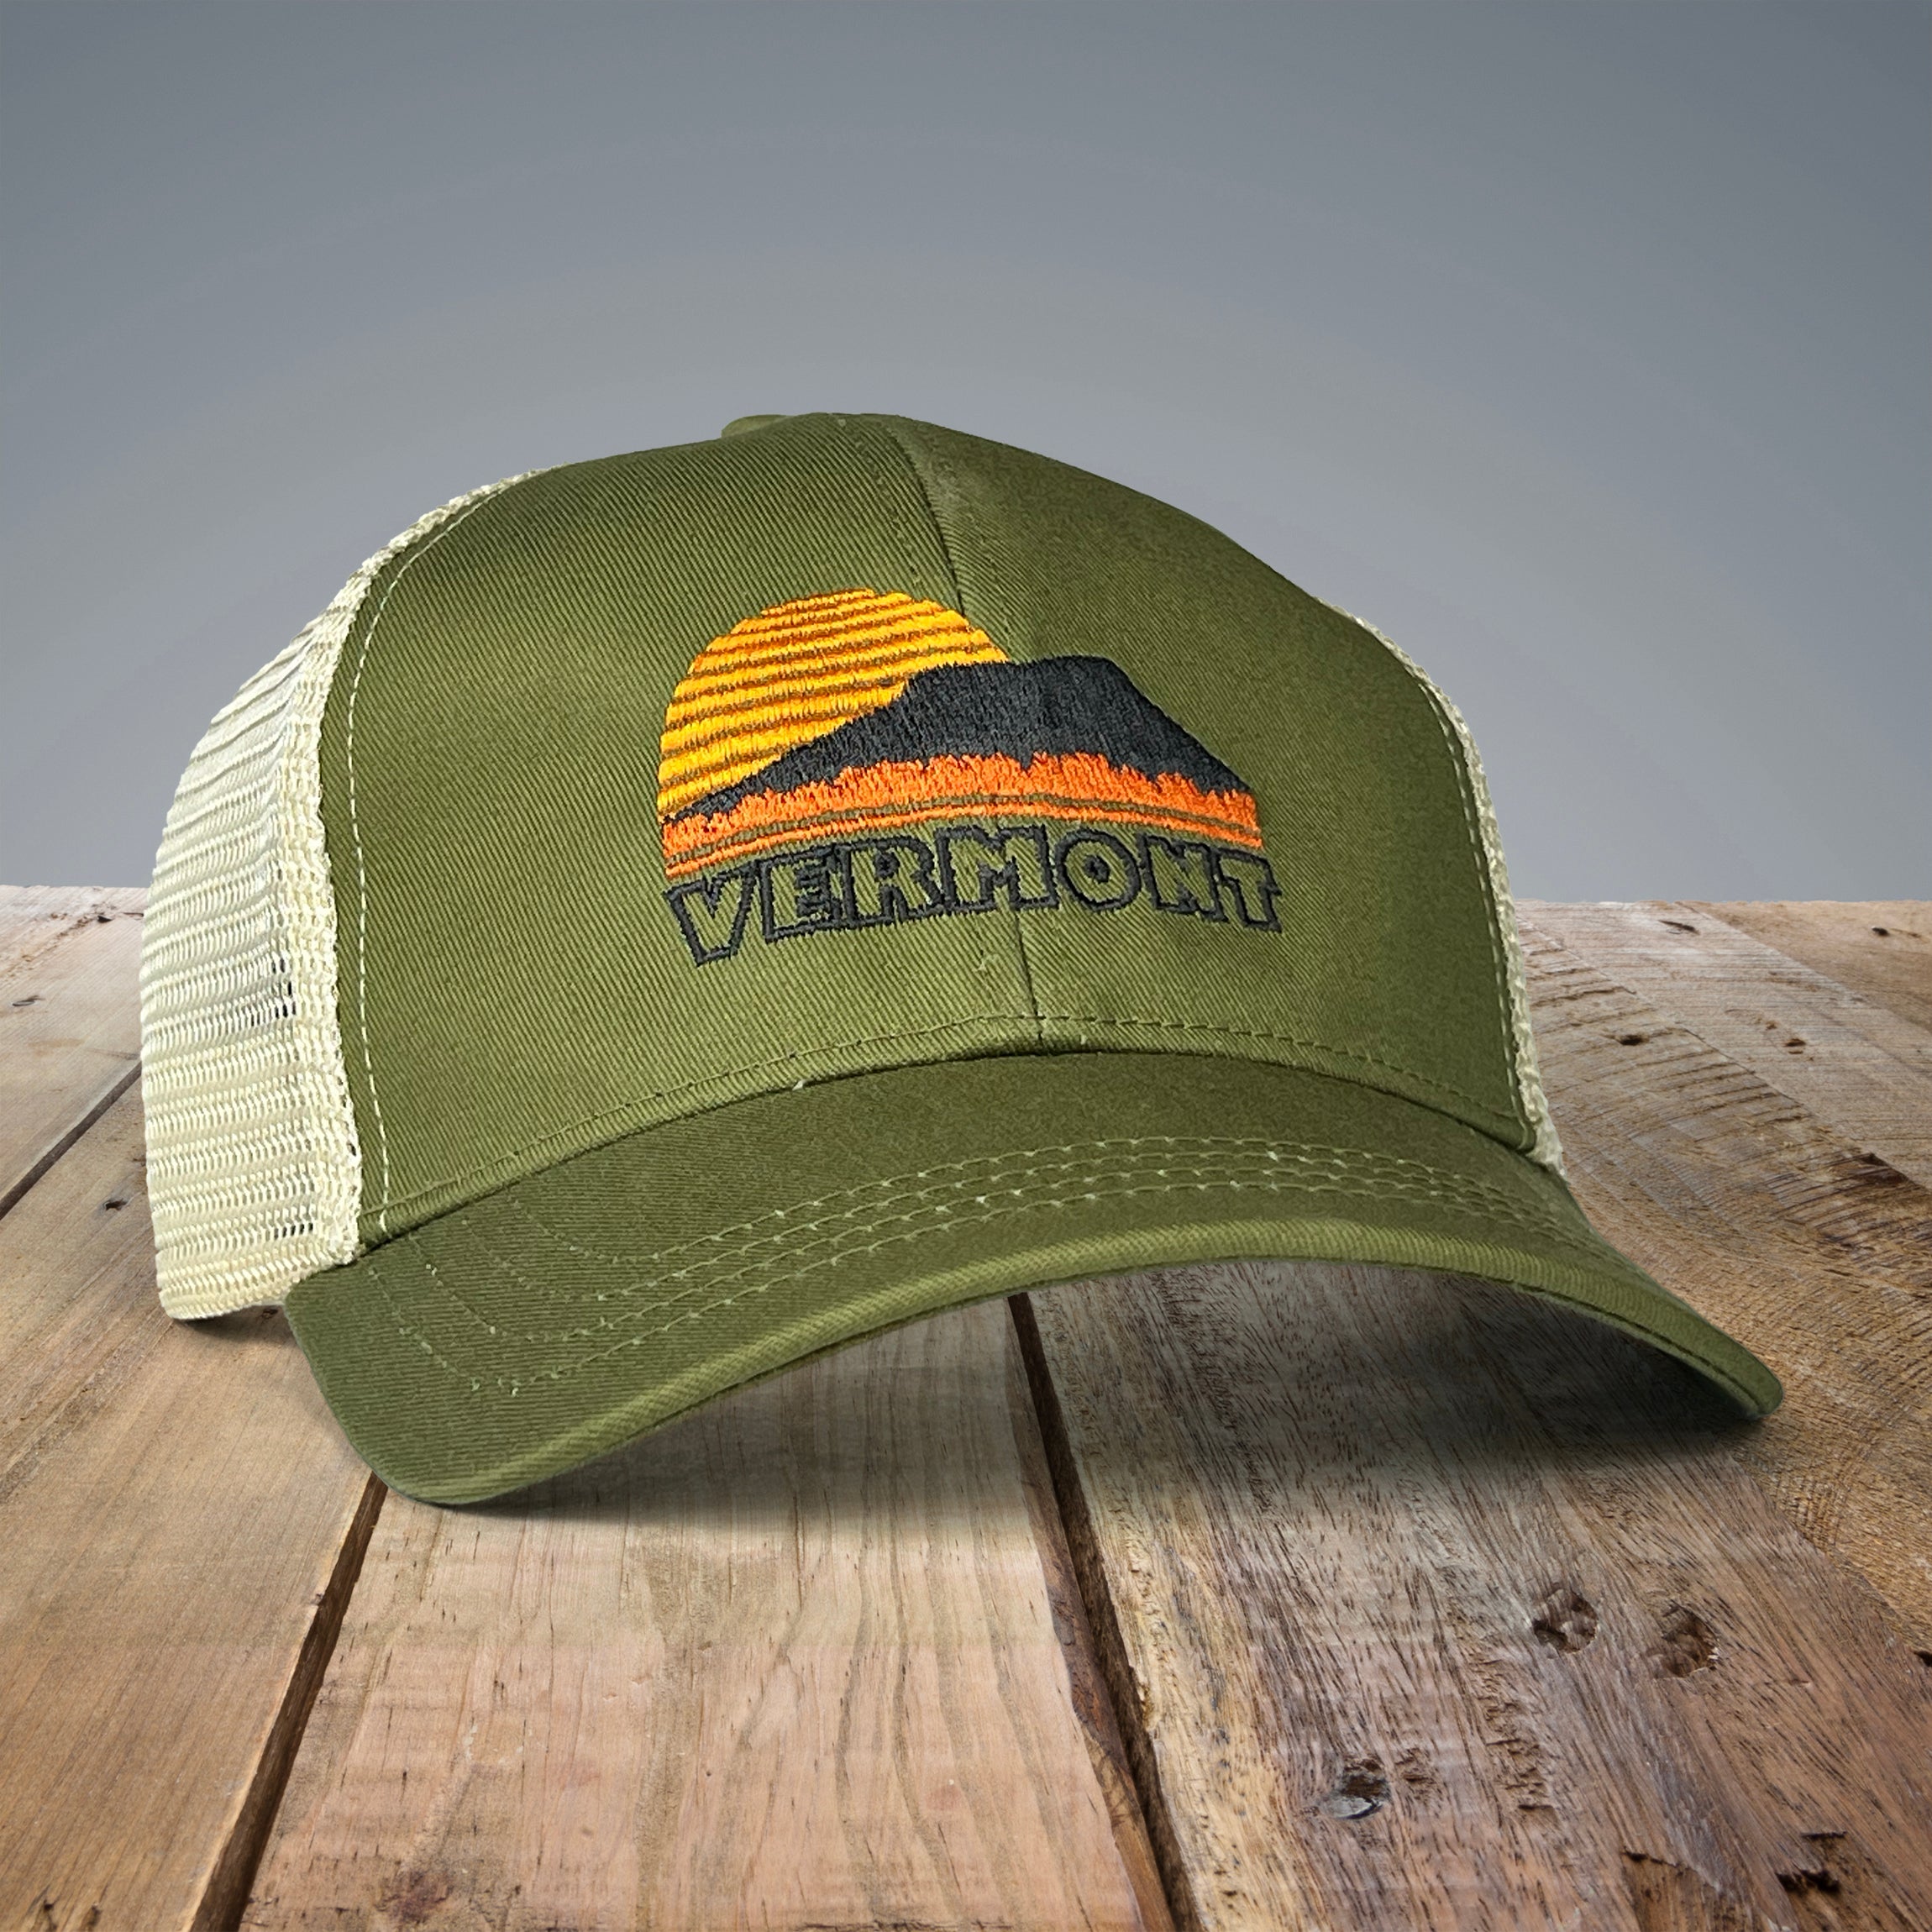 Vermont Sunset trucker hat in green.